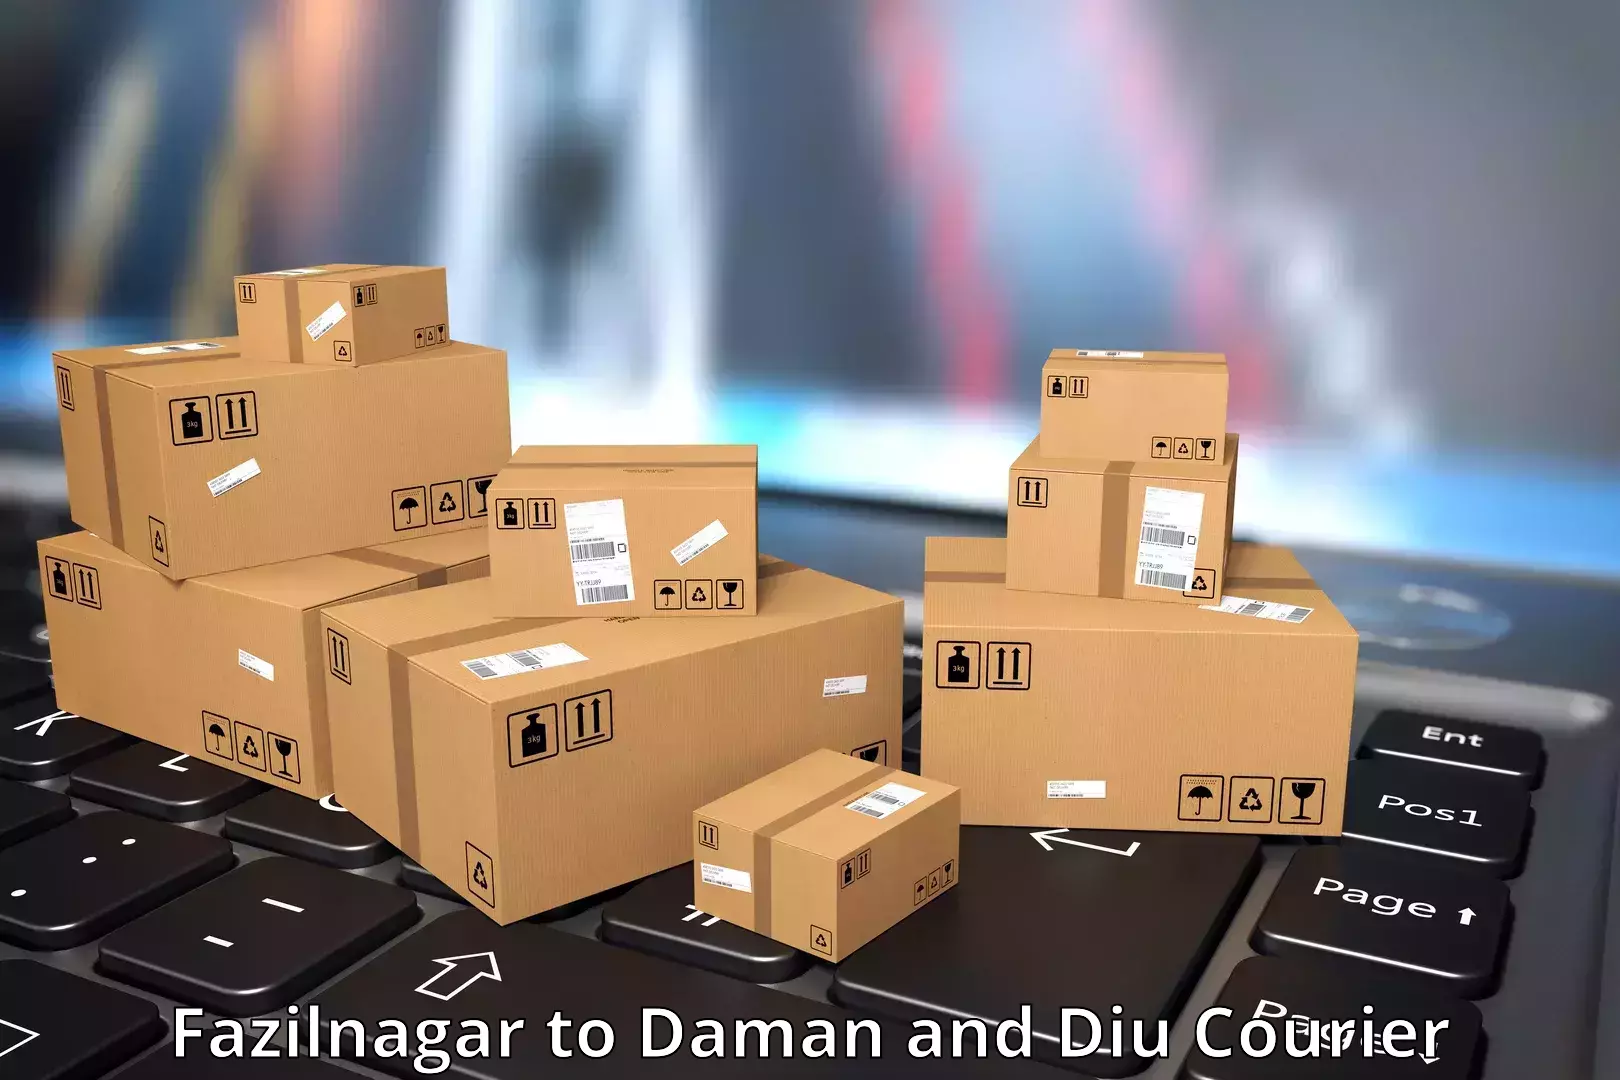 Professional courier handling in Fazilnagar to Diu